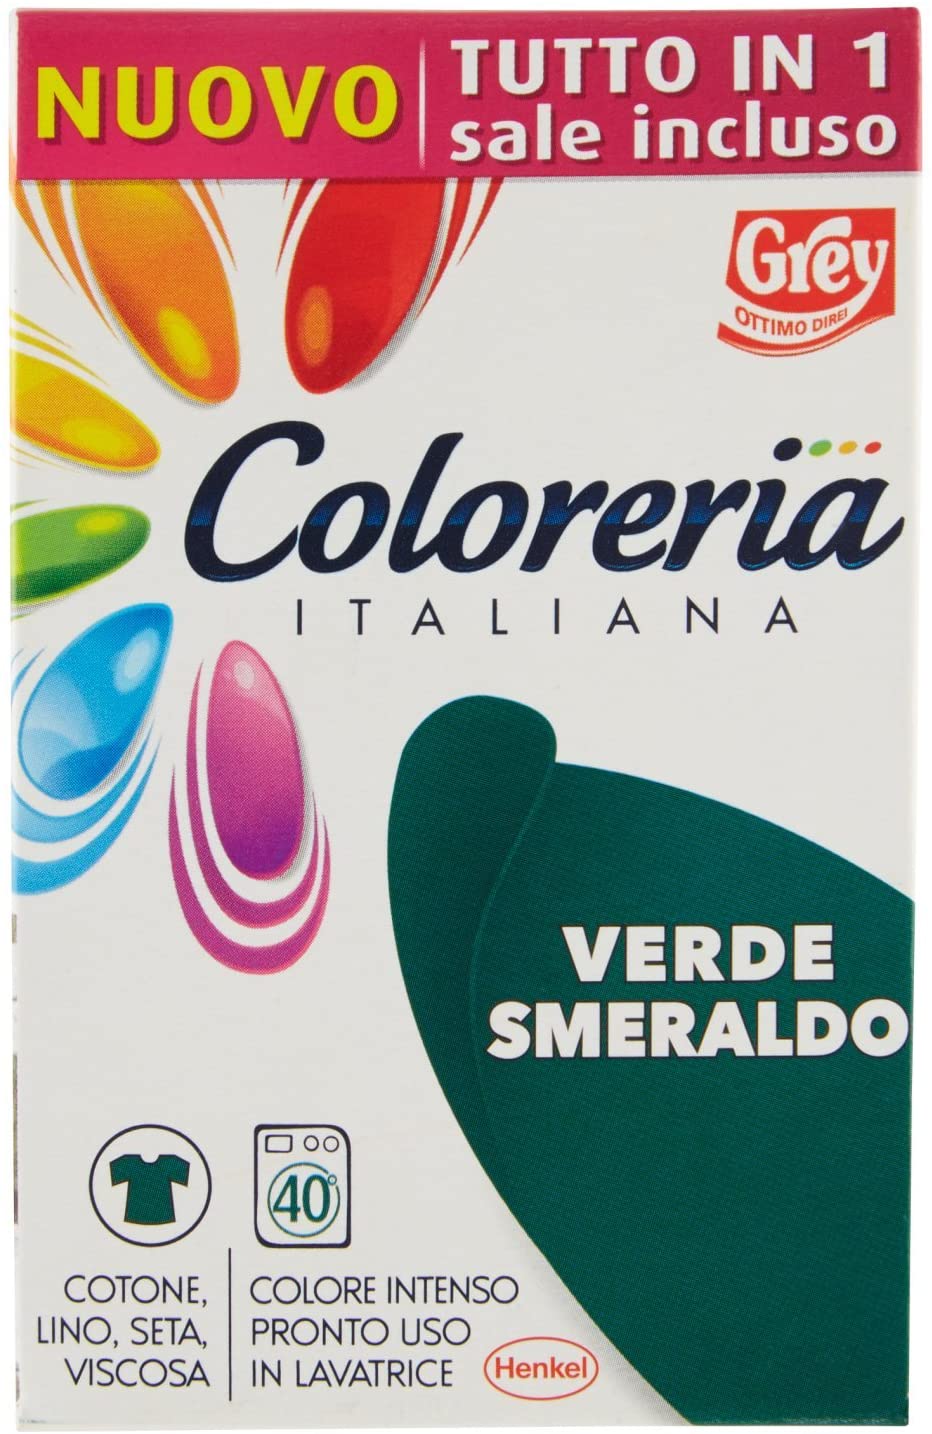 Coloreria Italiana colorante per tessuti Verde Smeraldo